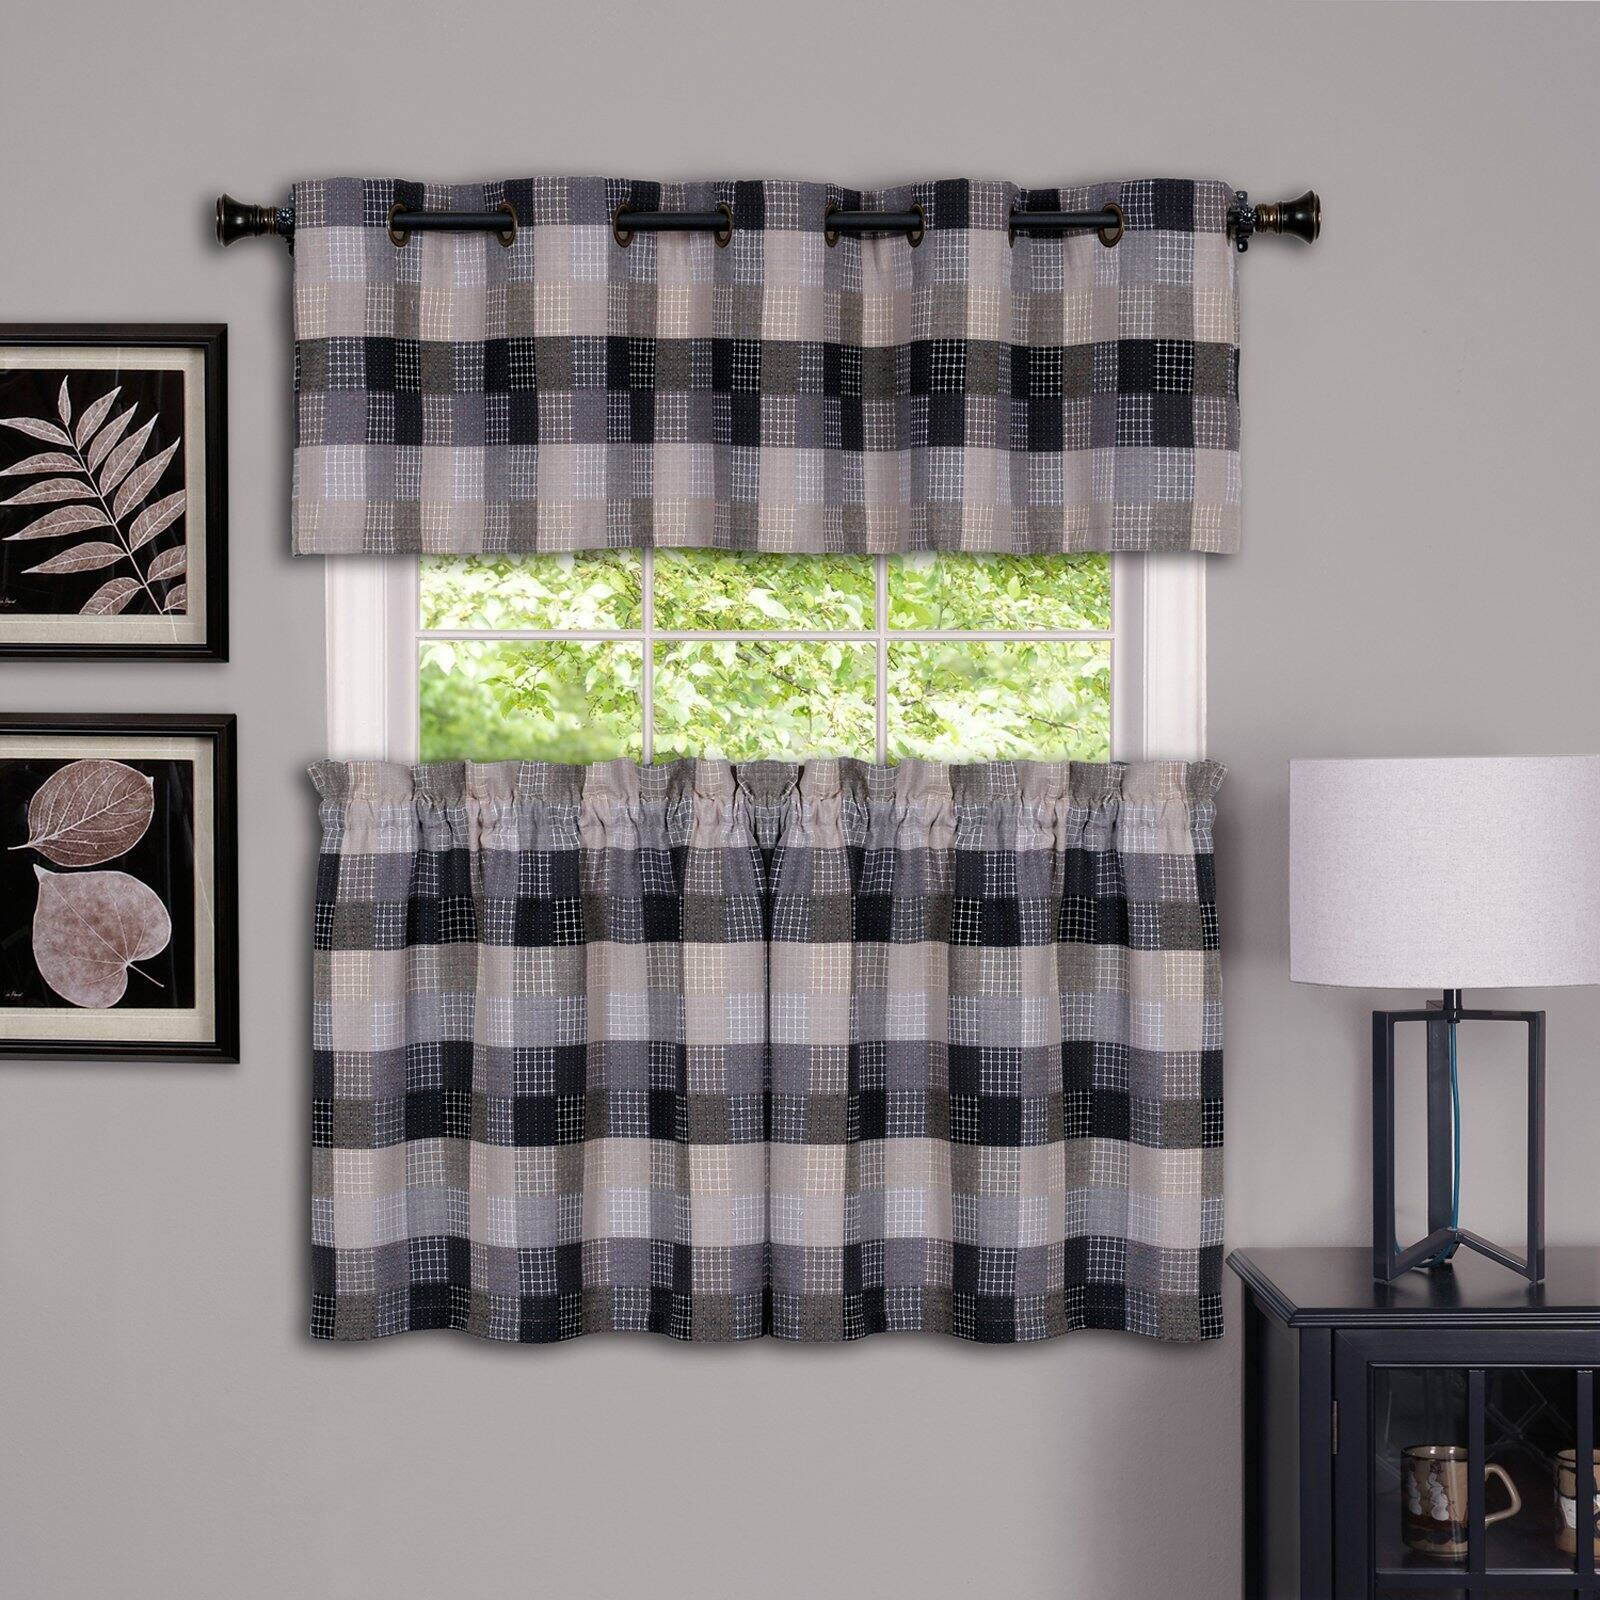 Achim Harvard Rod Pocket Light Filtering Curtain Tier Pair, Black, 57" x 24" - image 1 of 6